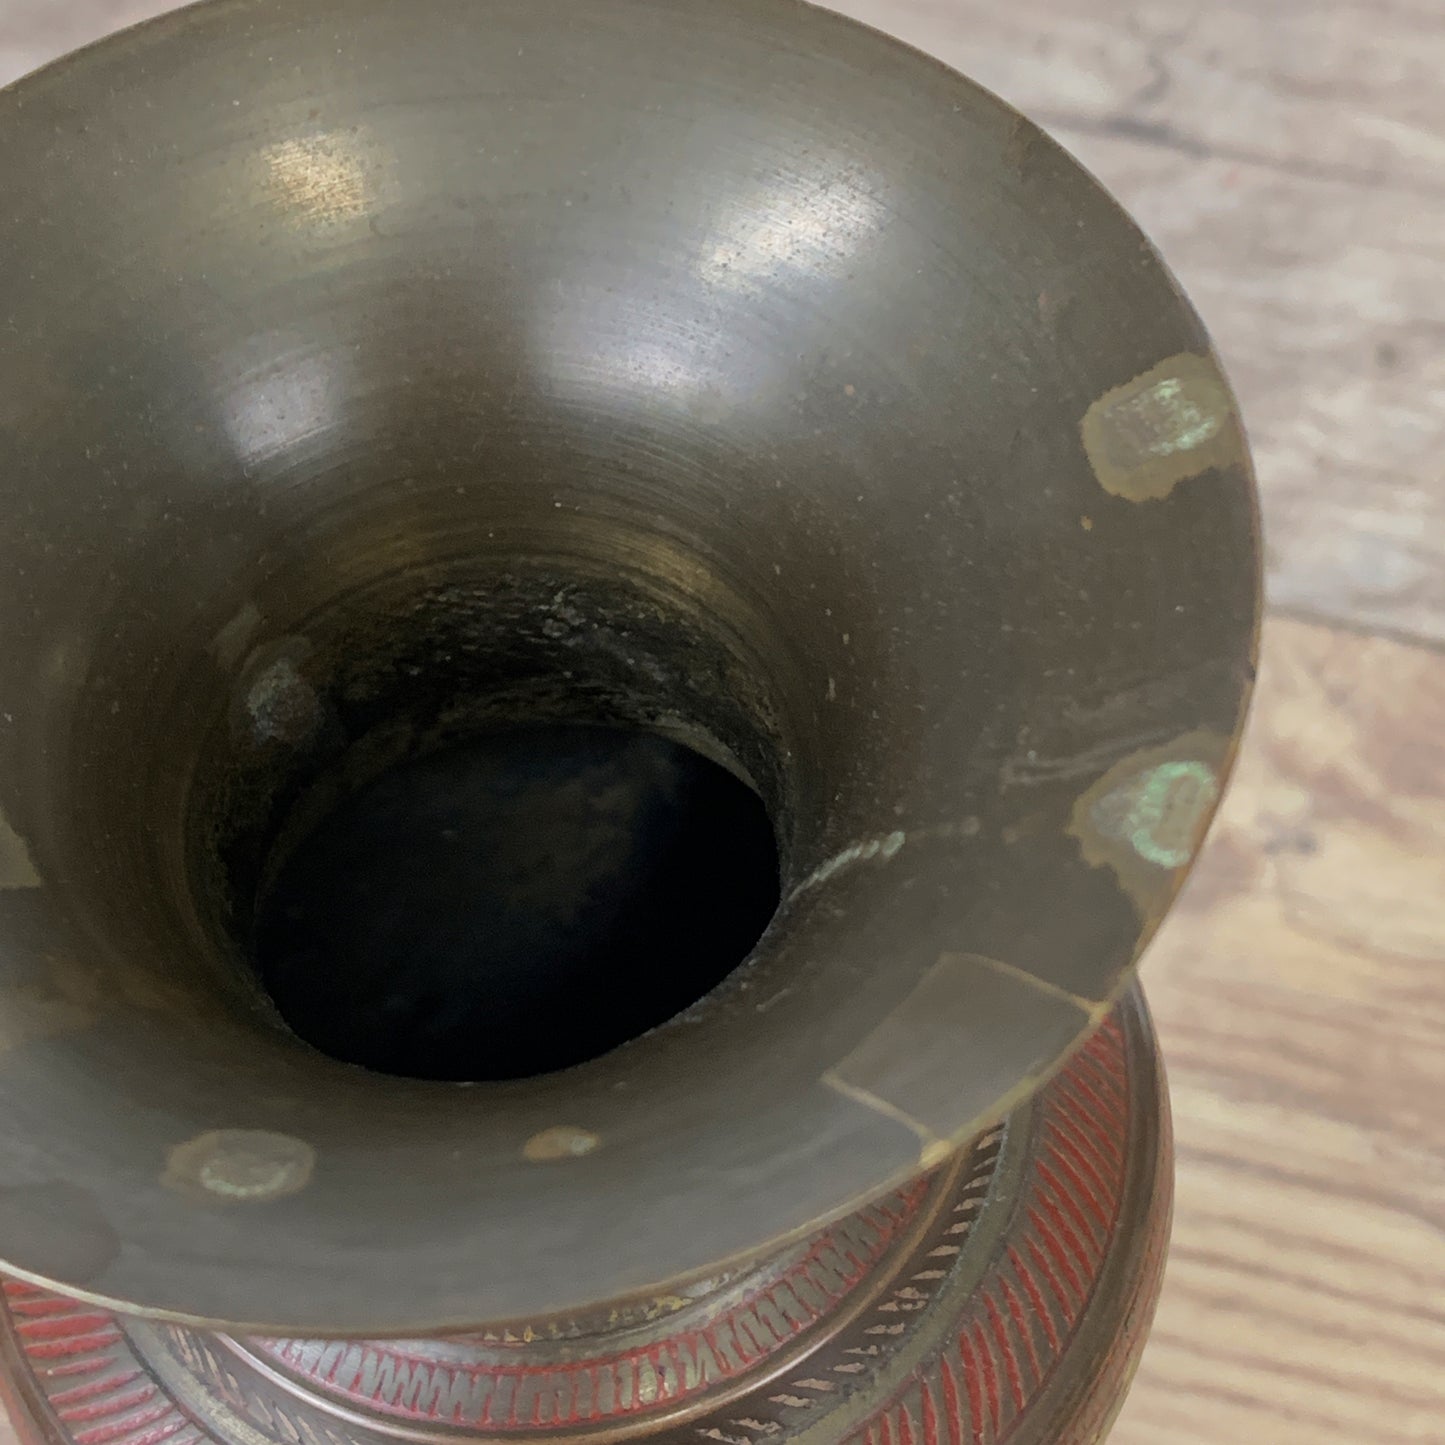 Vintage Brass Urn with Coloured Enamel